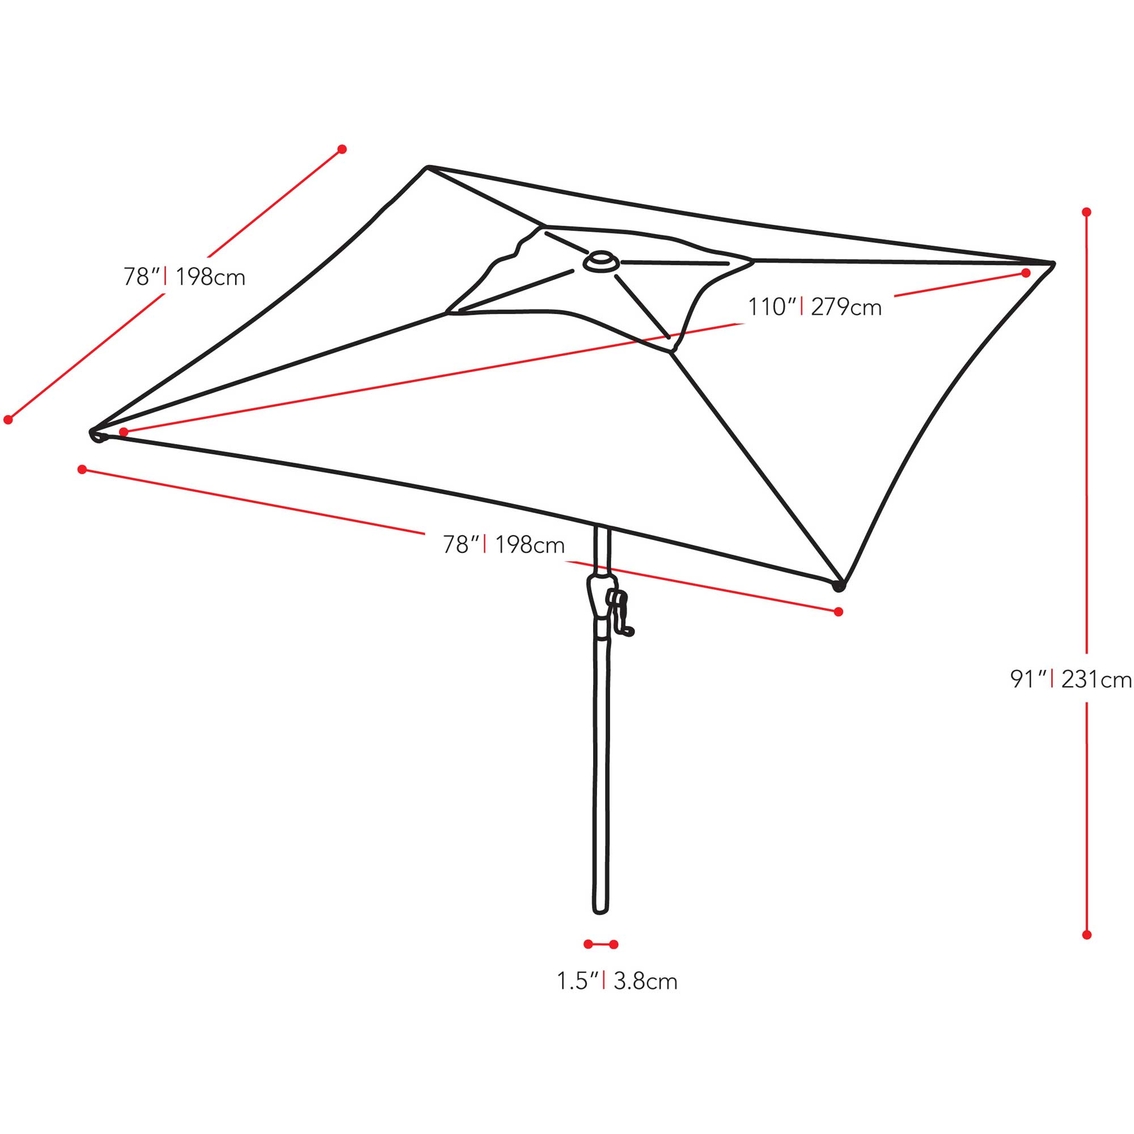 CorLiving 9 ft. Square Tilting Patio Umbrella - Image 6 of 8